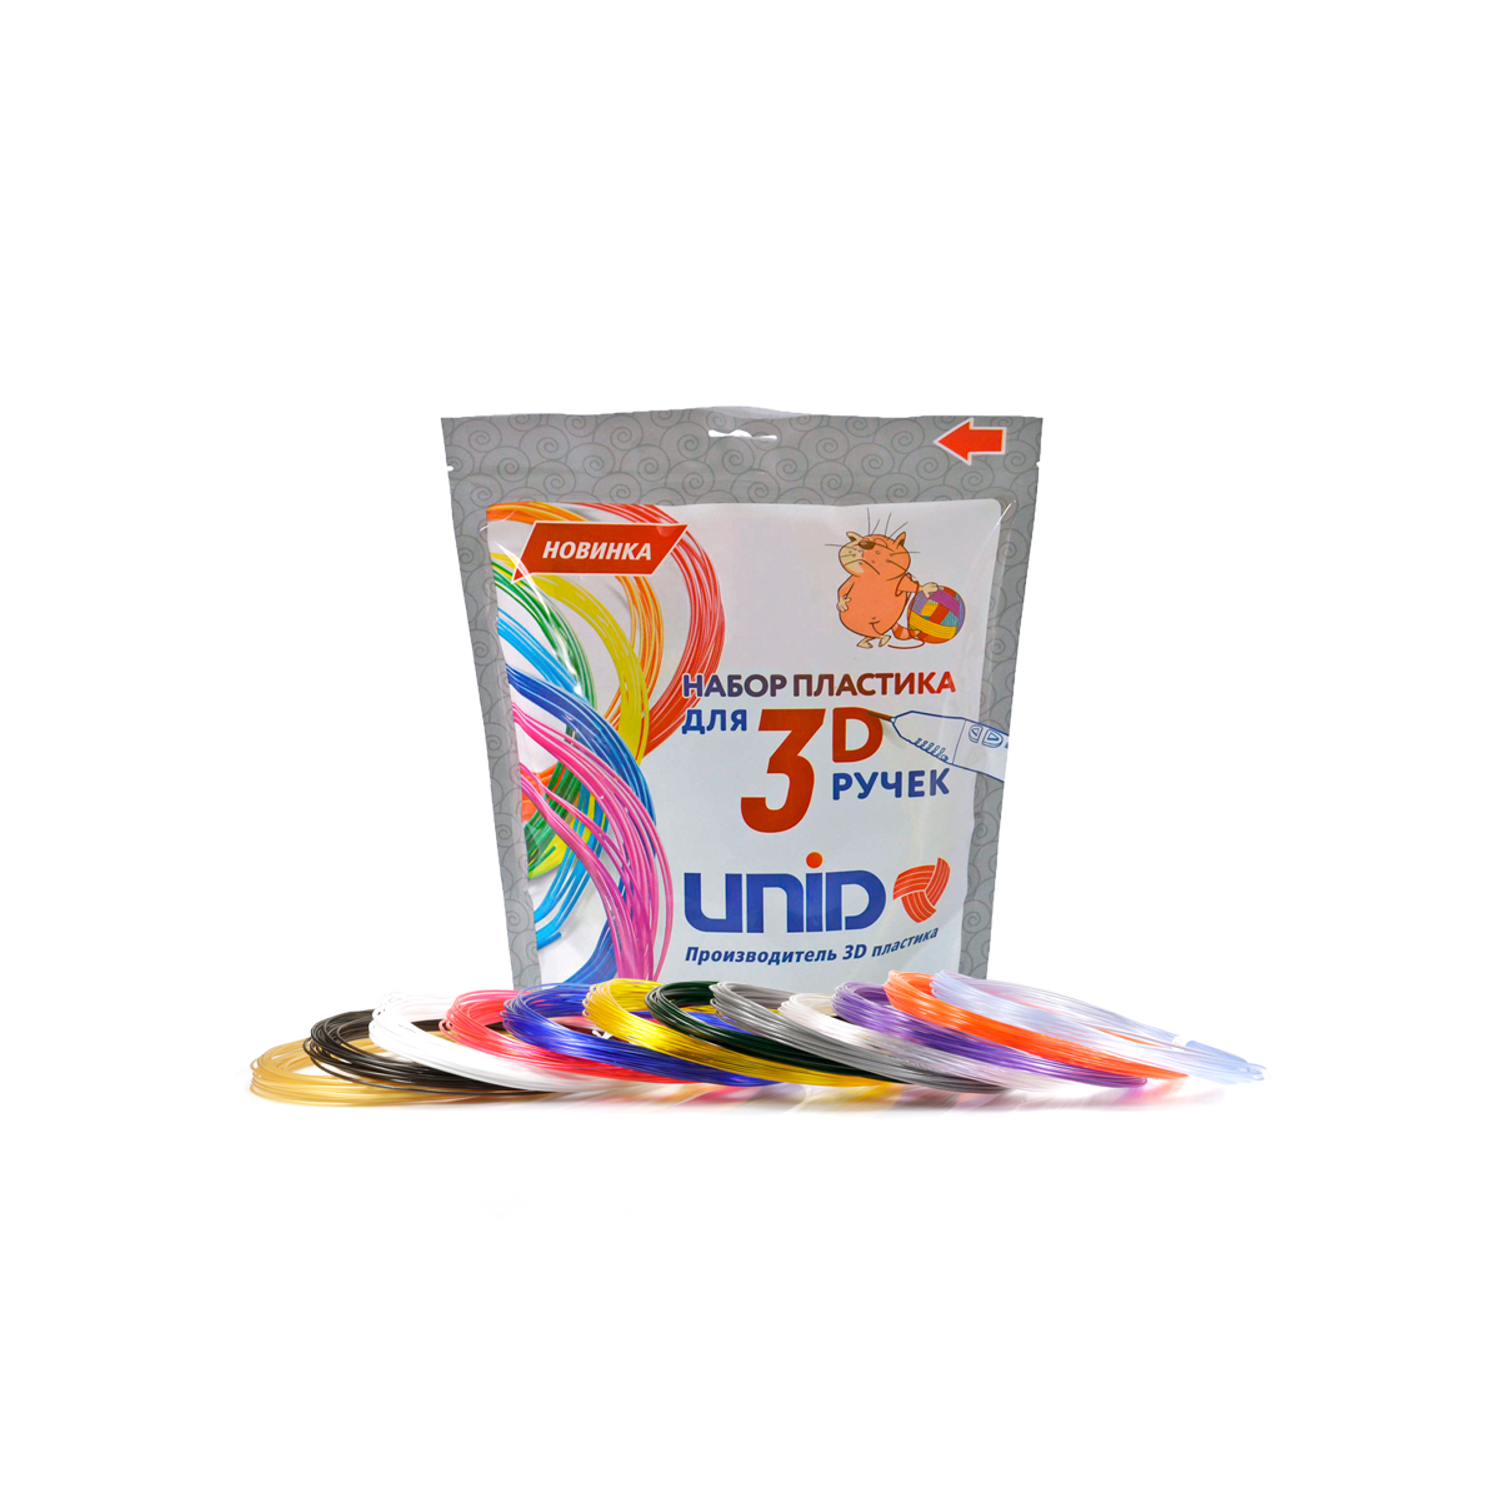 Пластик для 3д ручки UNID PRO12 - фото 1